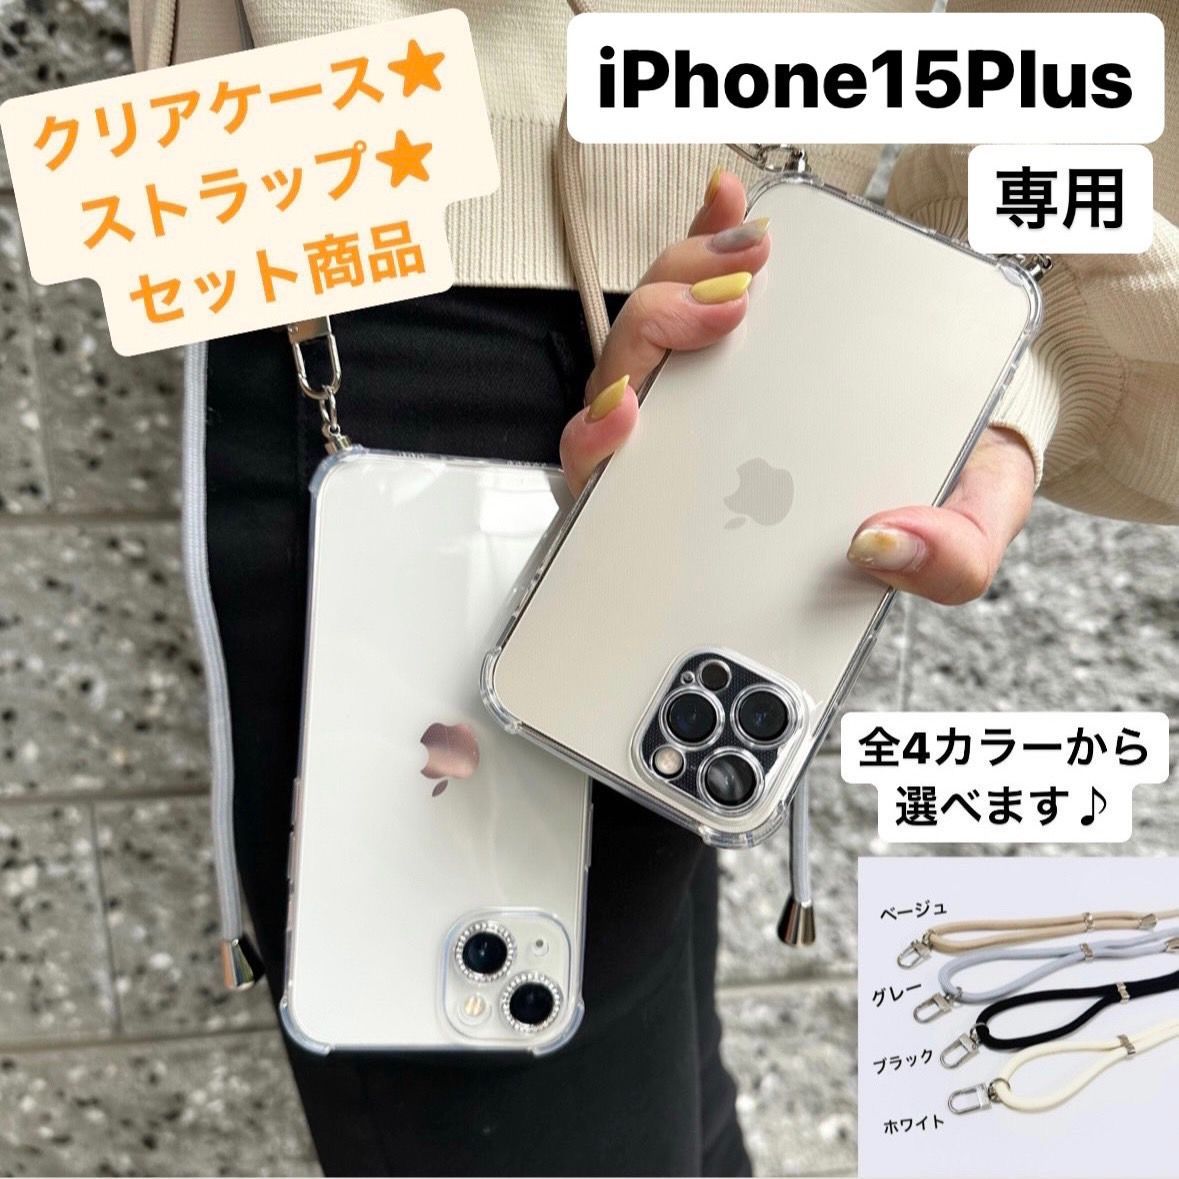 iPhone7 ケース クリア クリアケース あいふぉんけーす スマホケース